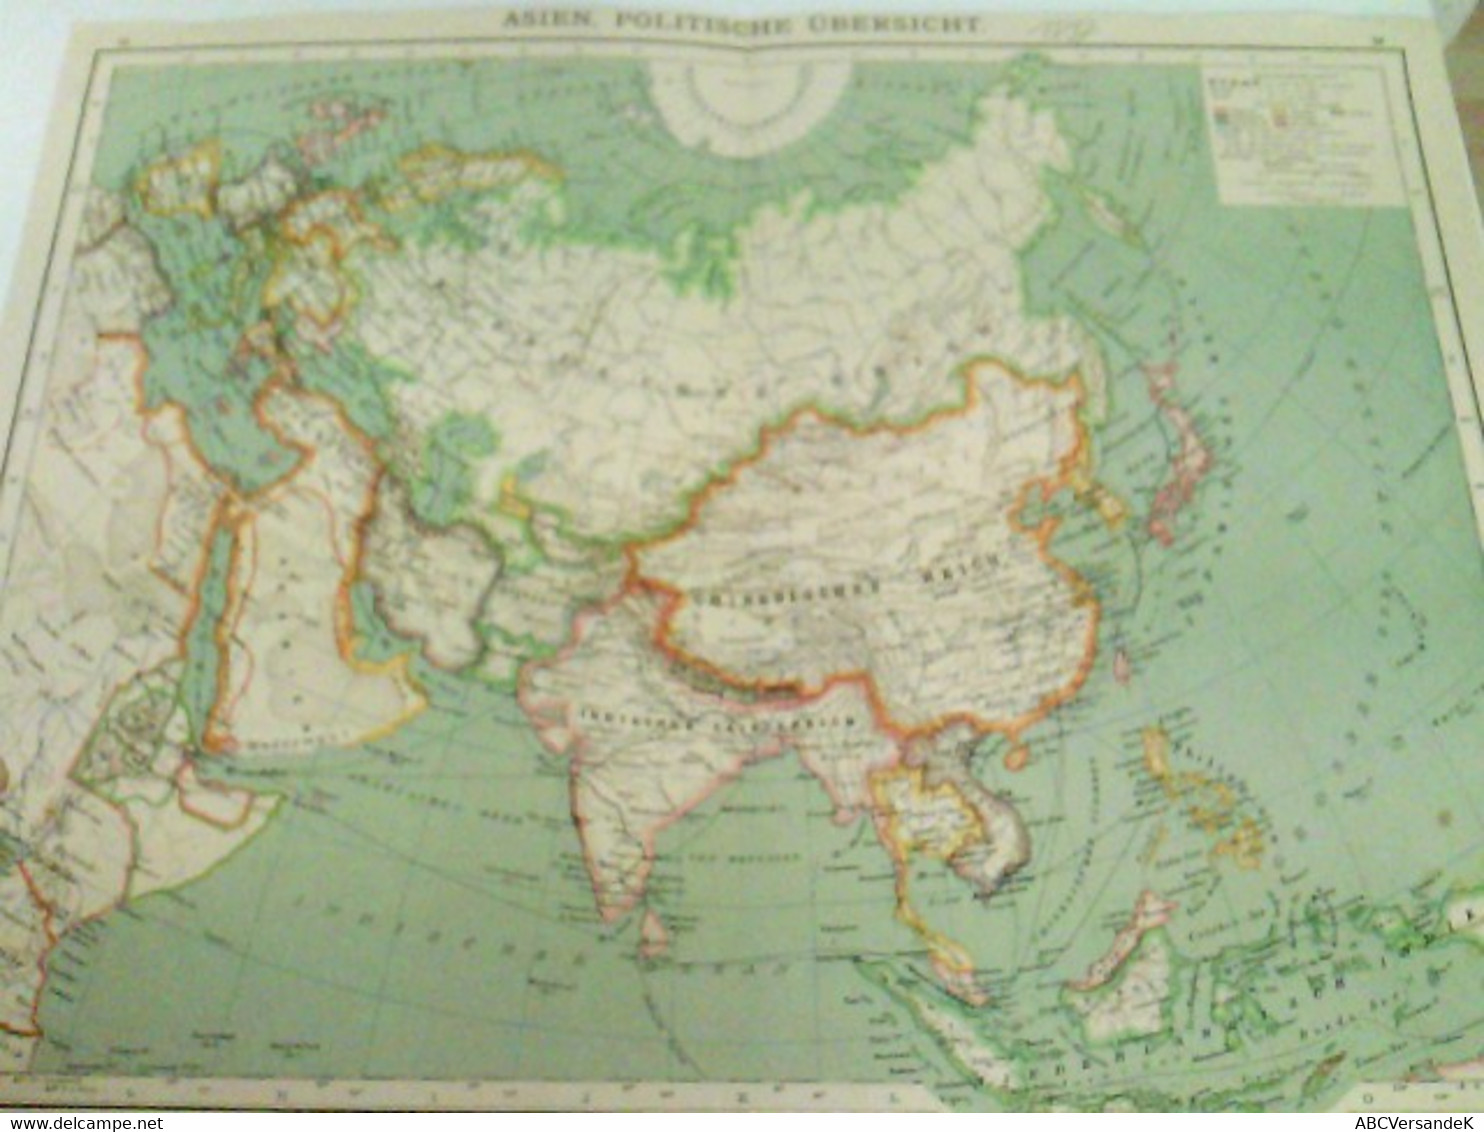 Farblithografie Asien, Politische Übersicht, Maßstab 1 : 35.000.000 - Asia & Oriente Próximo